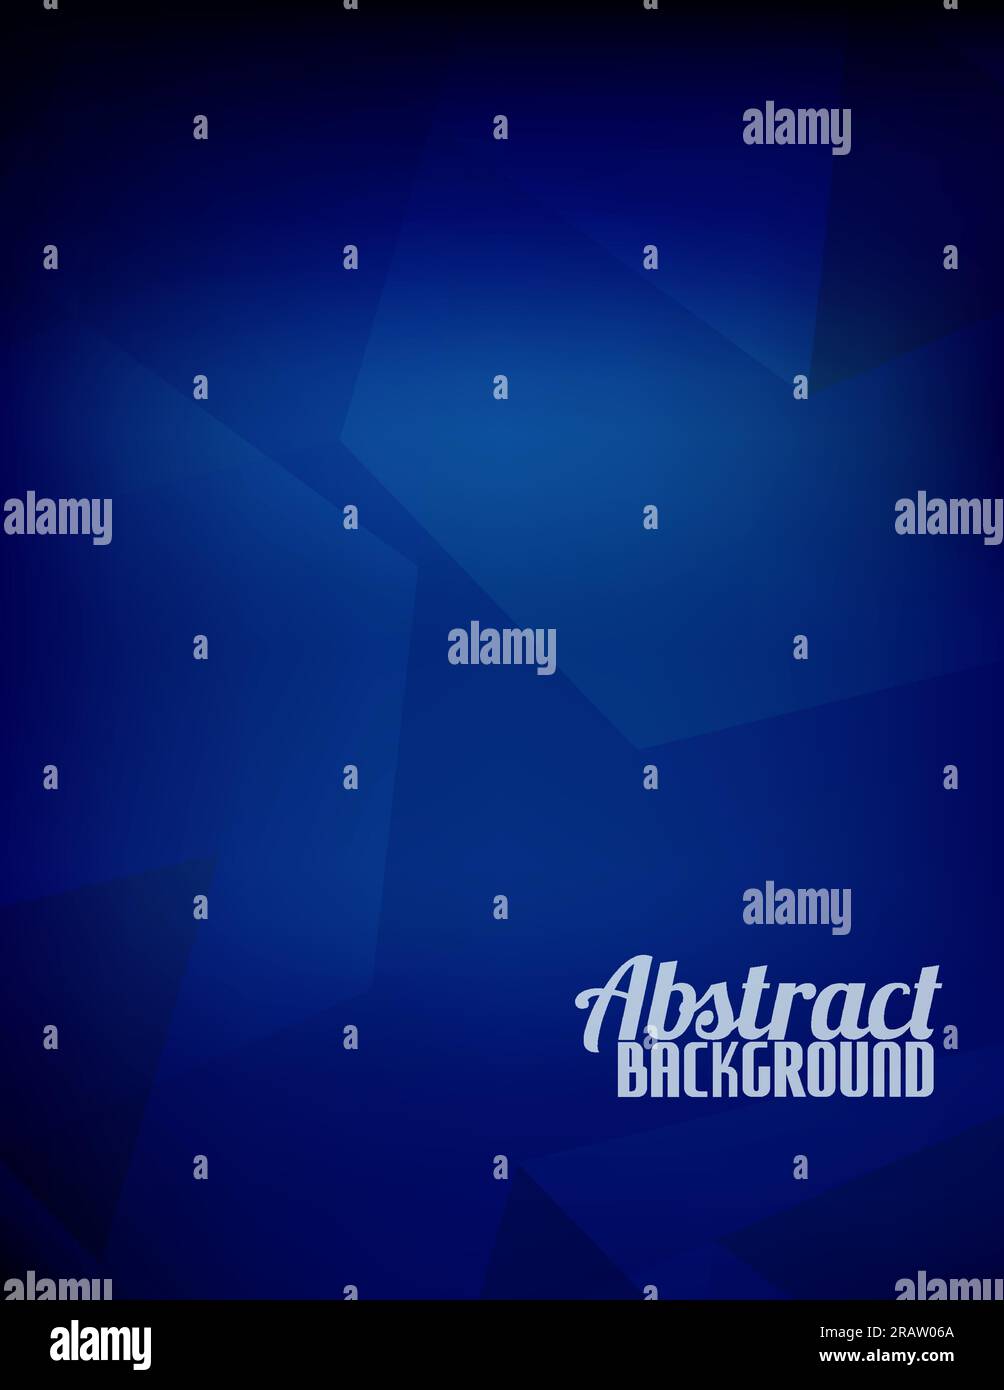 Abstrakter gesättigter dunkelblauer Hintergrund mit einfachen geometrischen Formen. Vertikales grafisches Vektormuster Stock Vektor